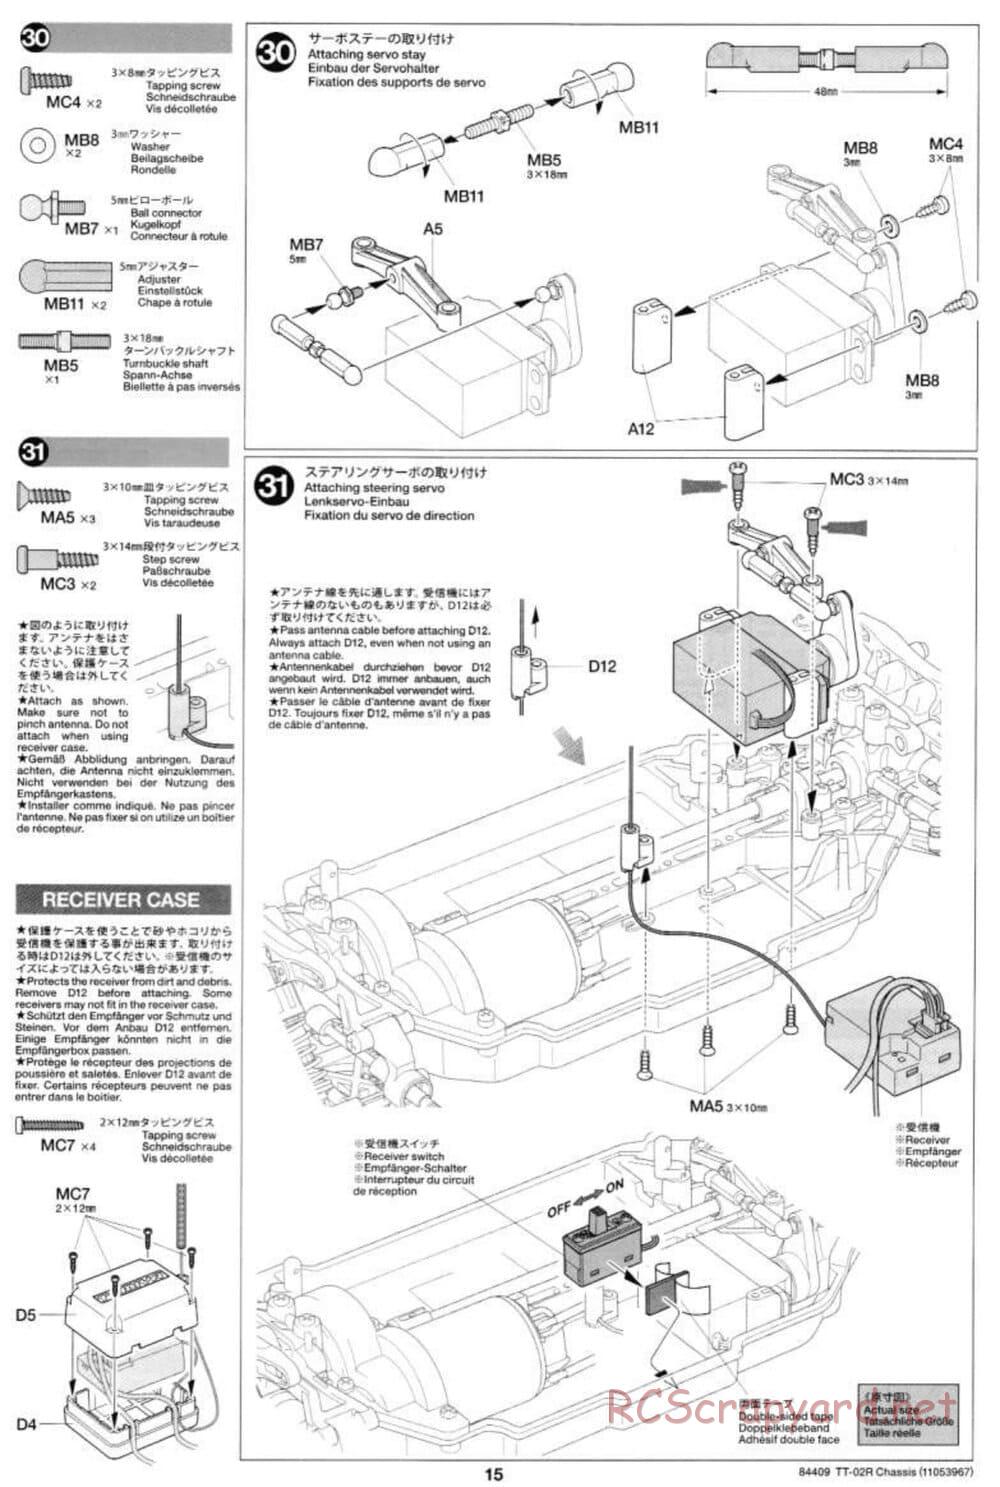 Tamiya - TT-02R Chassis - Manual - Page 15